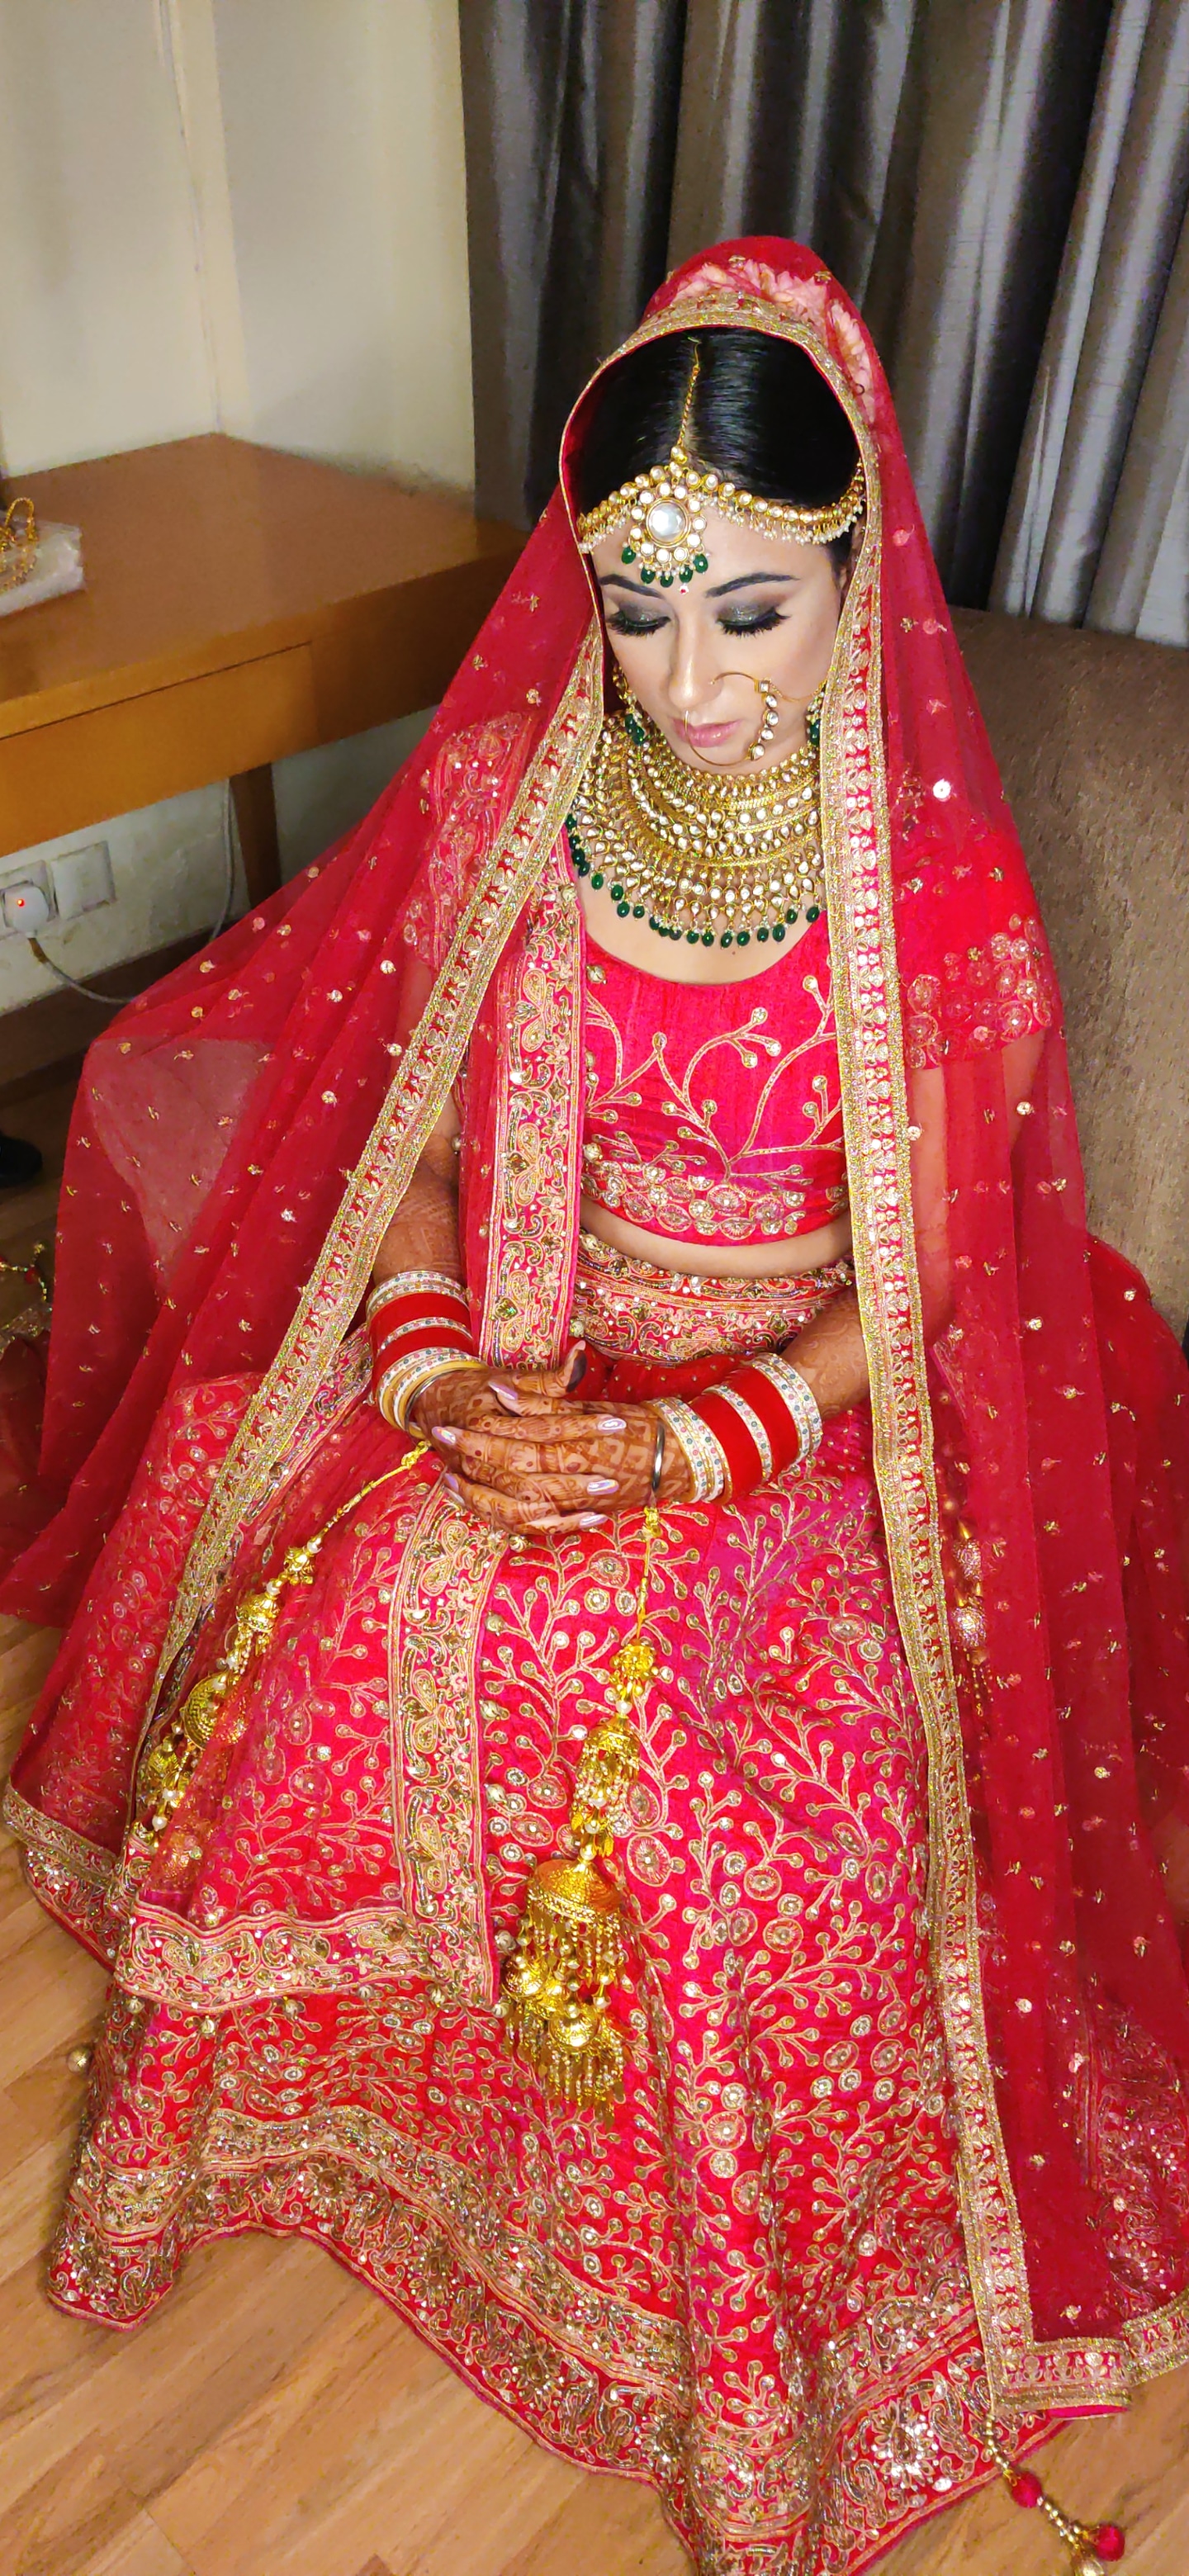 manali-tanwar-makeup-artist-delhi-ncr